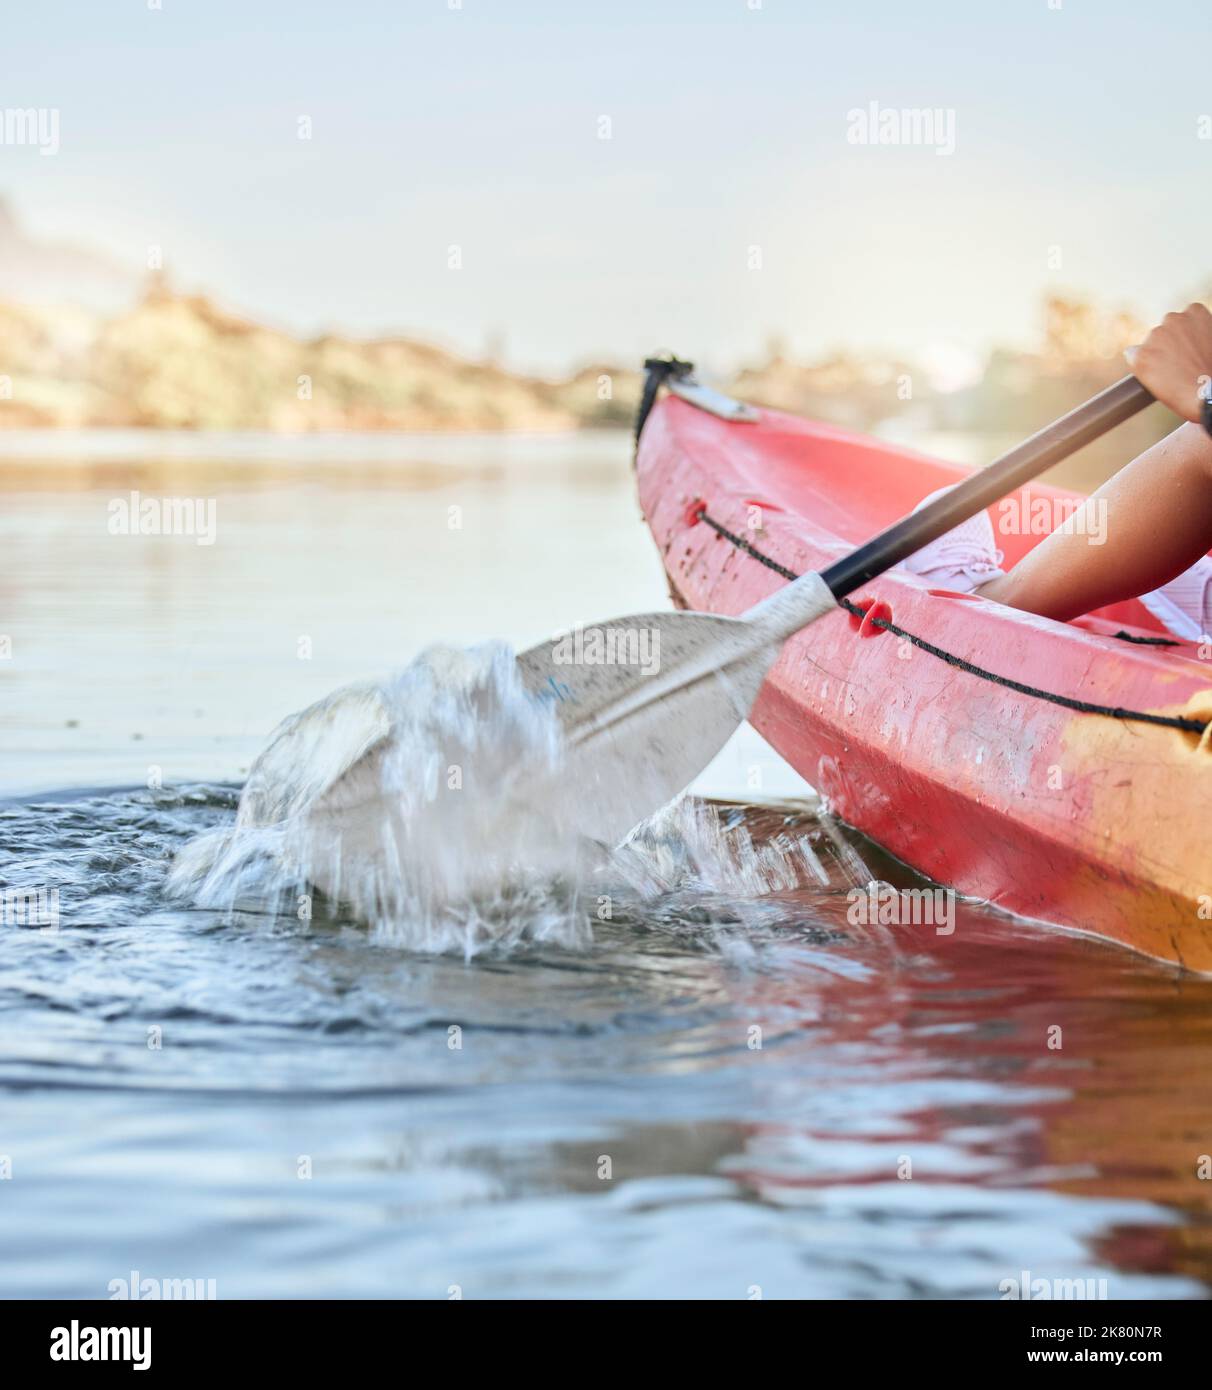 Lac calme, sports nautiques et femme sur l'aventure de kayak pour l'été voyage excursion canoë, kayak et en utilisant la paddle sur la rivière. Exercice, vacances ou vacances Banque D'Images